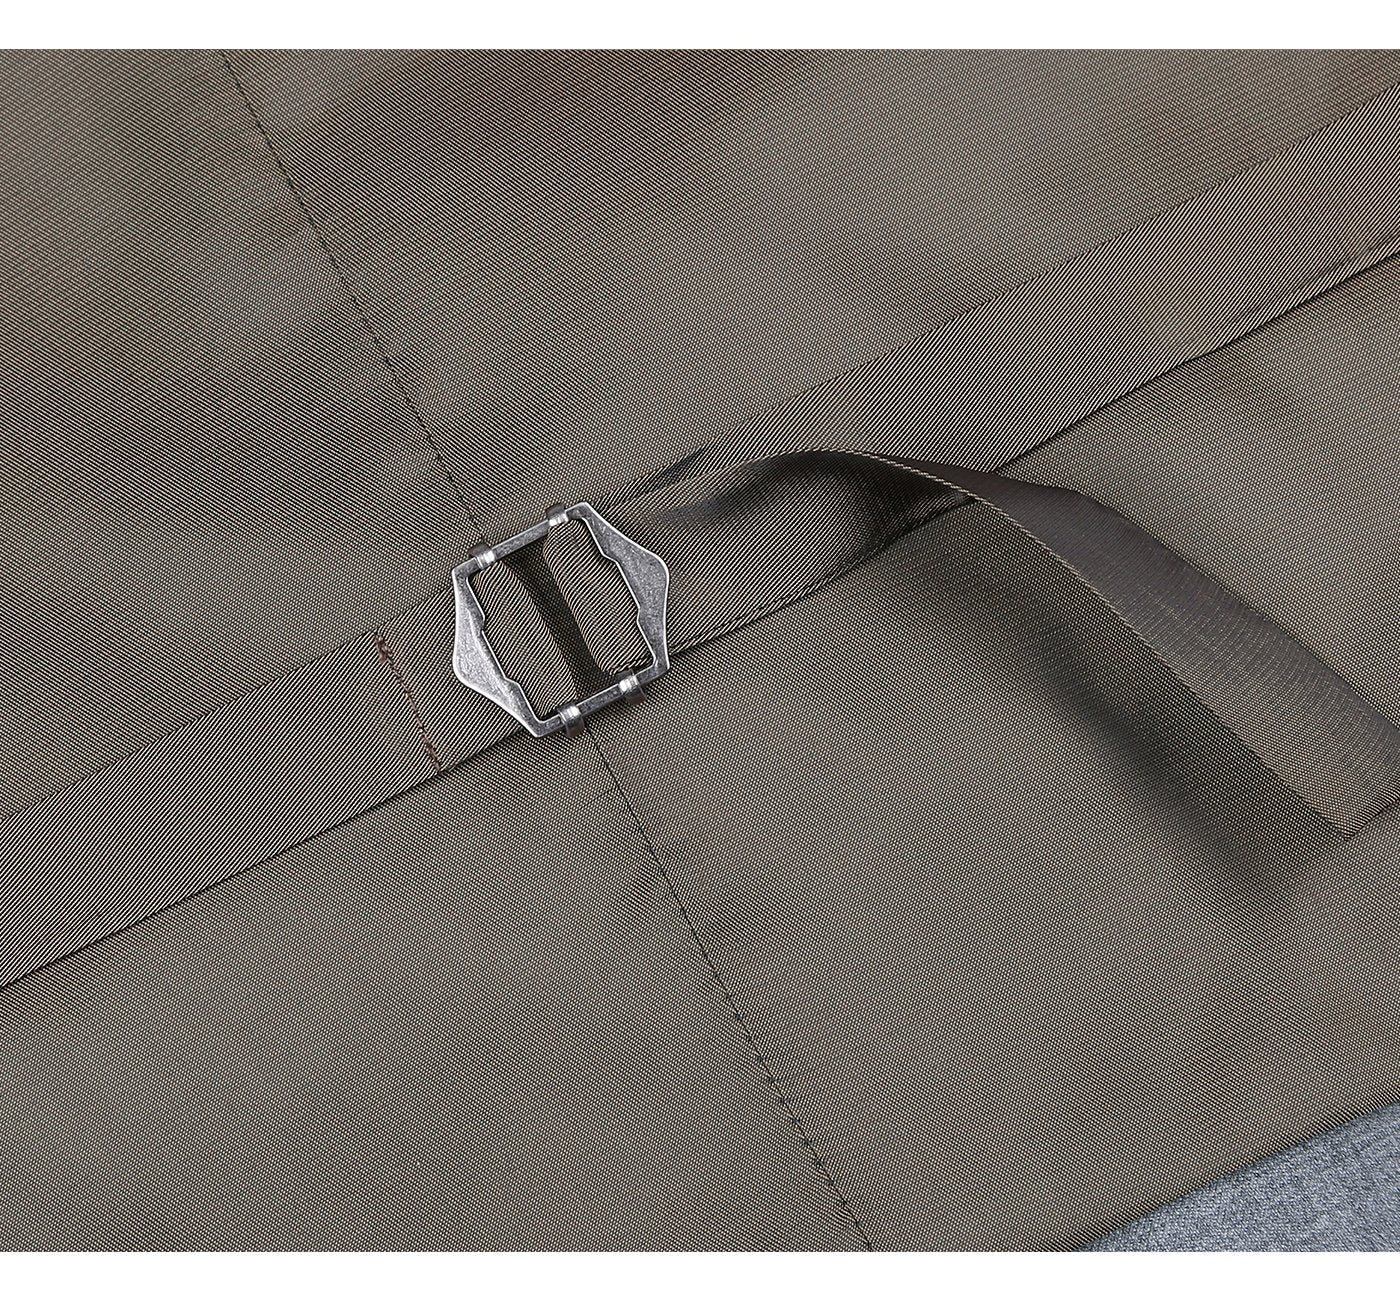 508-5 Men's Light Grey Classic Fit Suit Separate Wool Vest